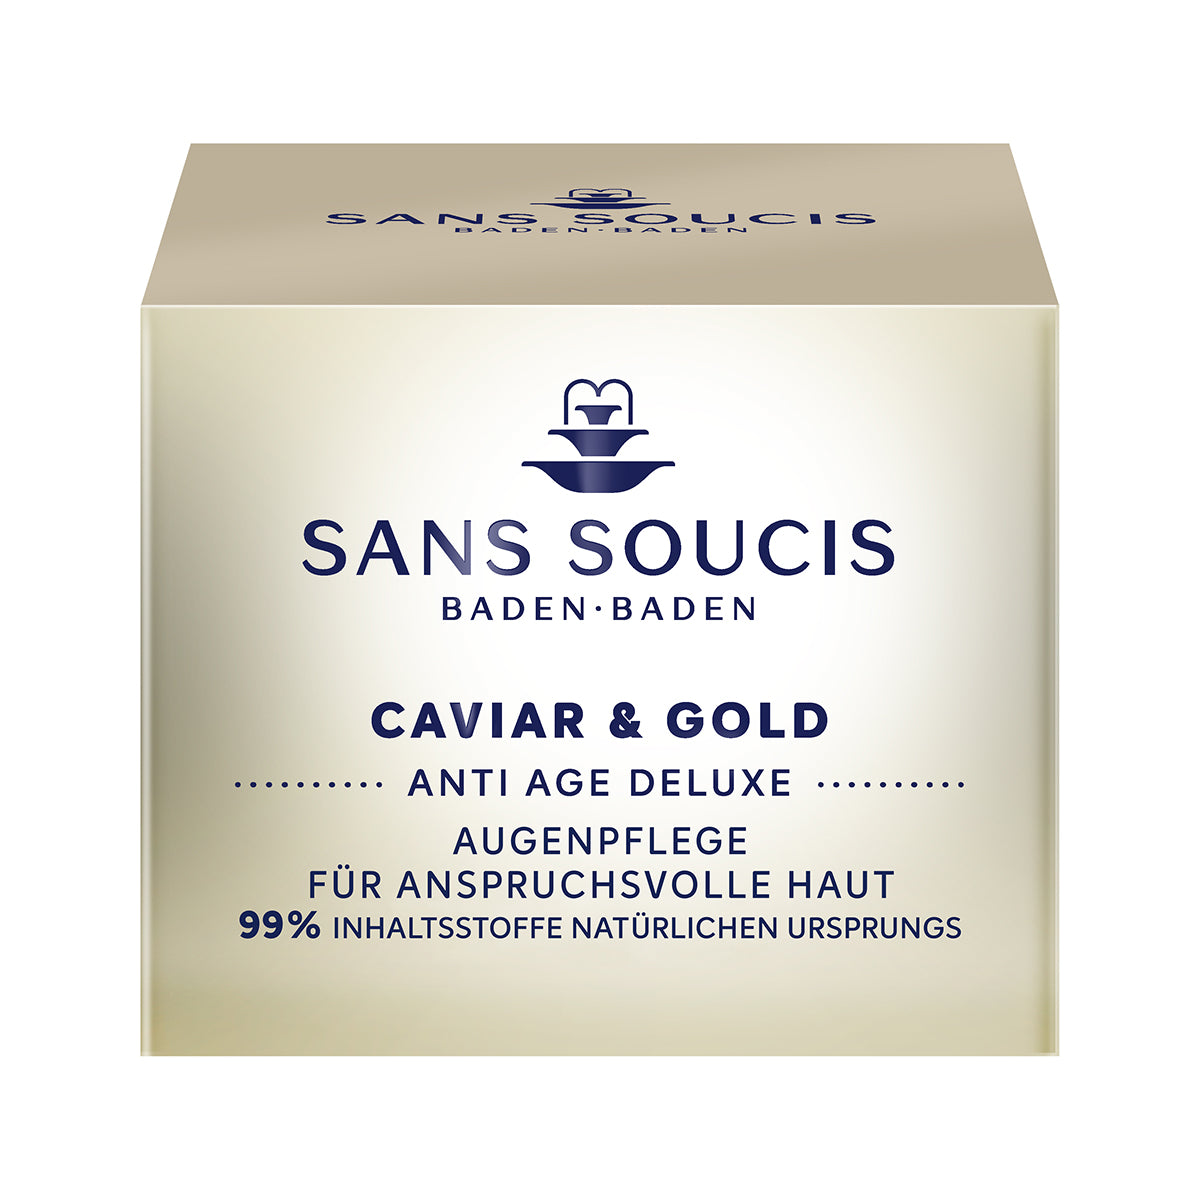 Caviar & Gold Eye Care